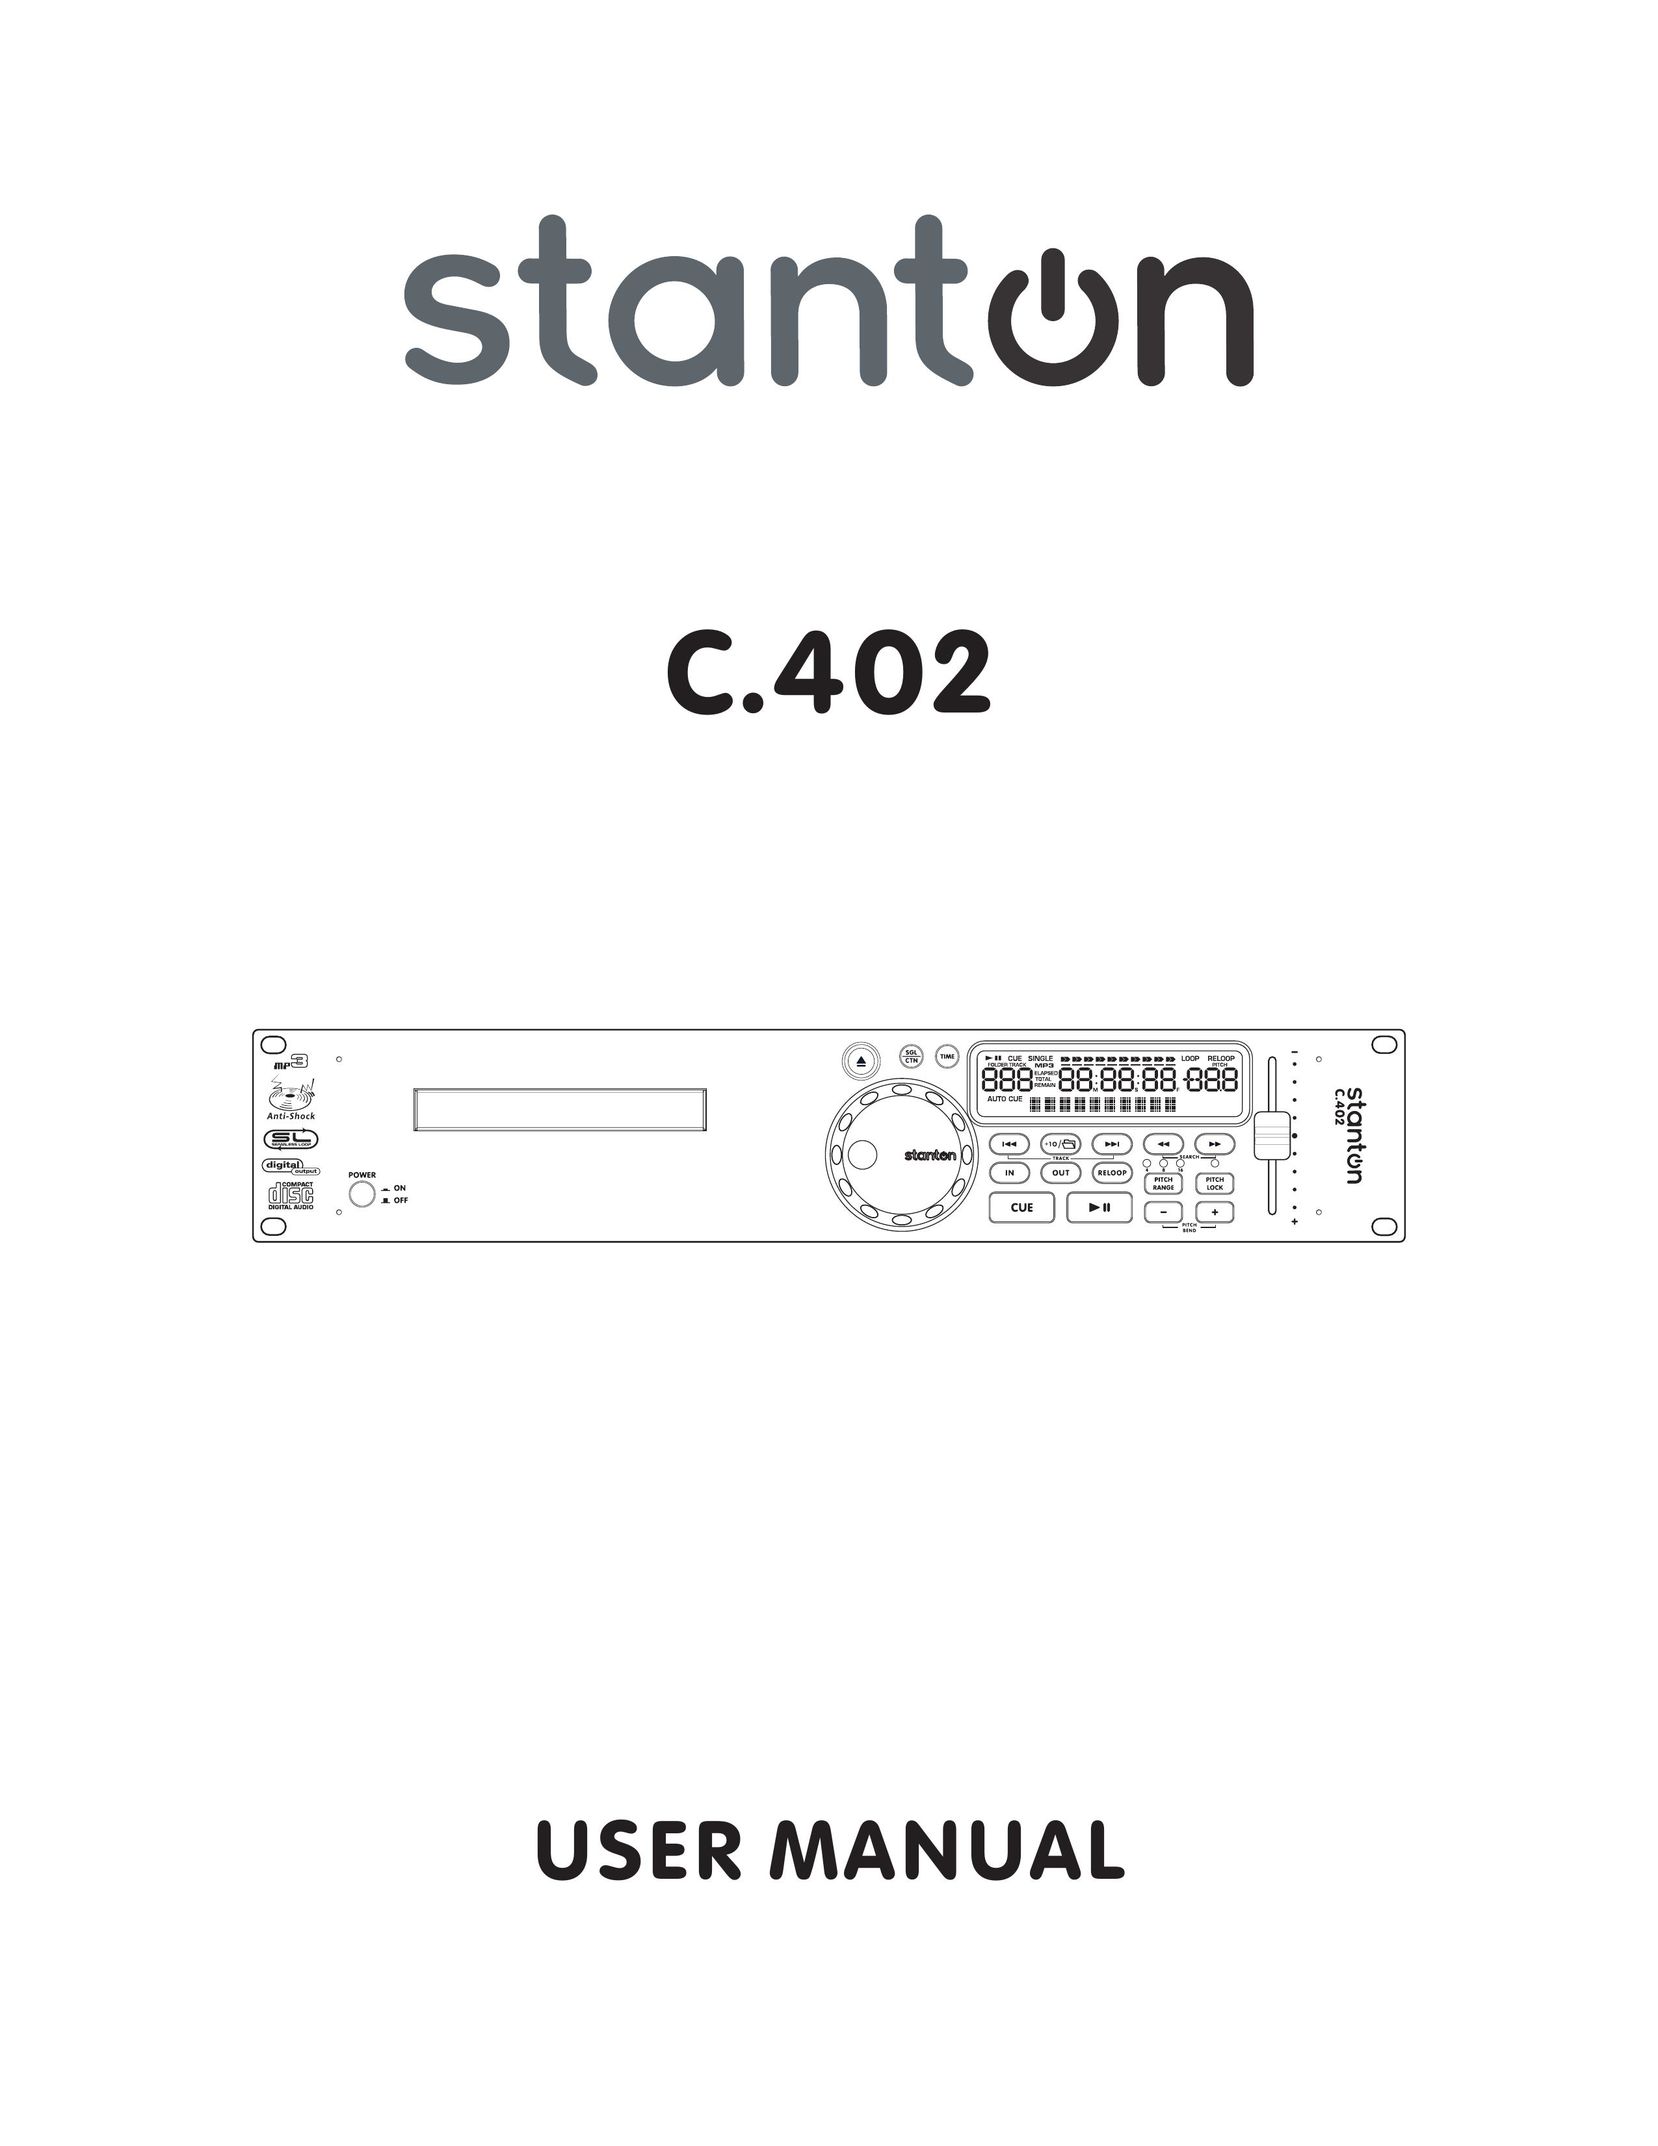 Stanton C.402 CD Player User Manual